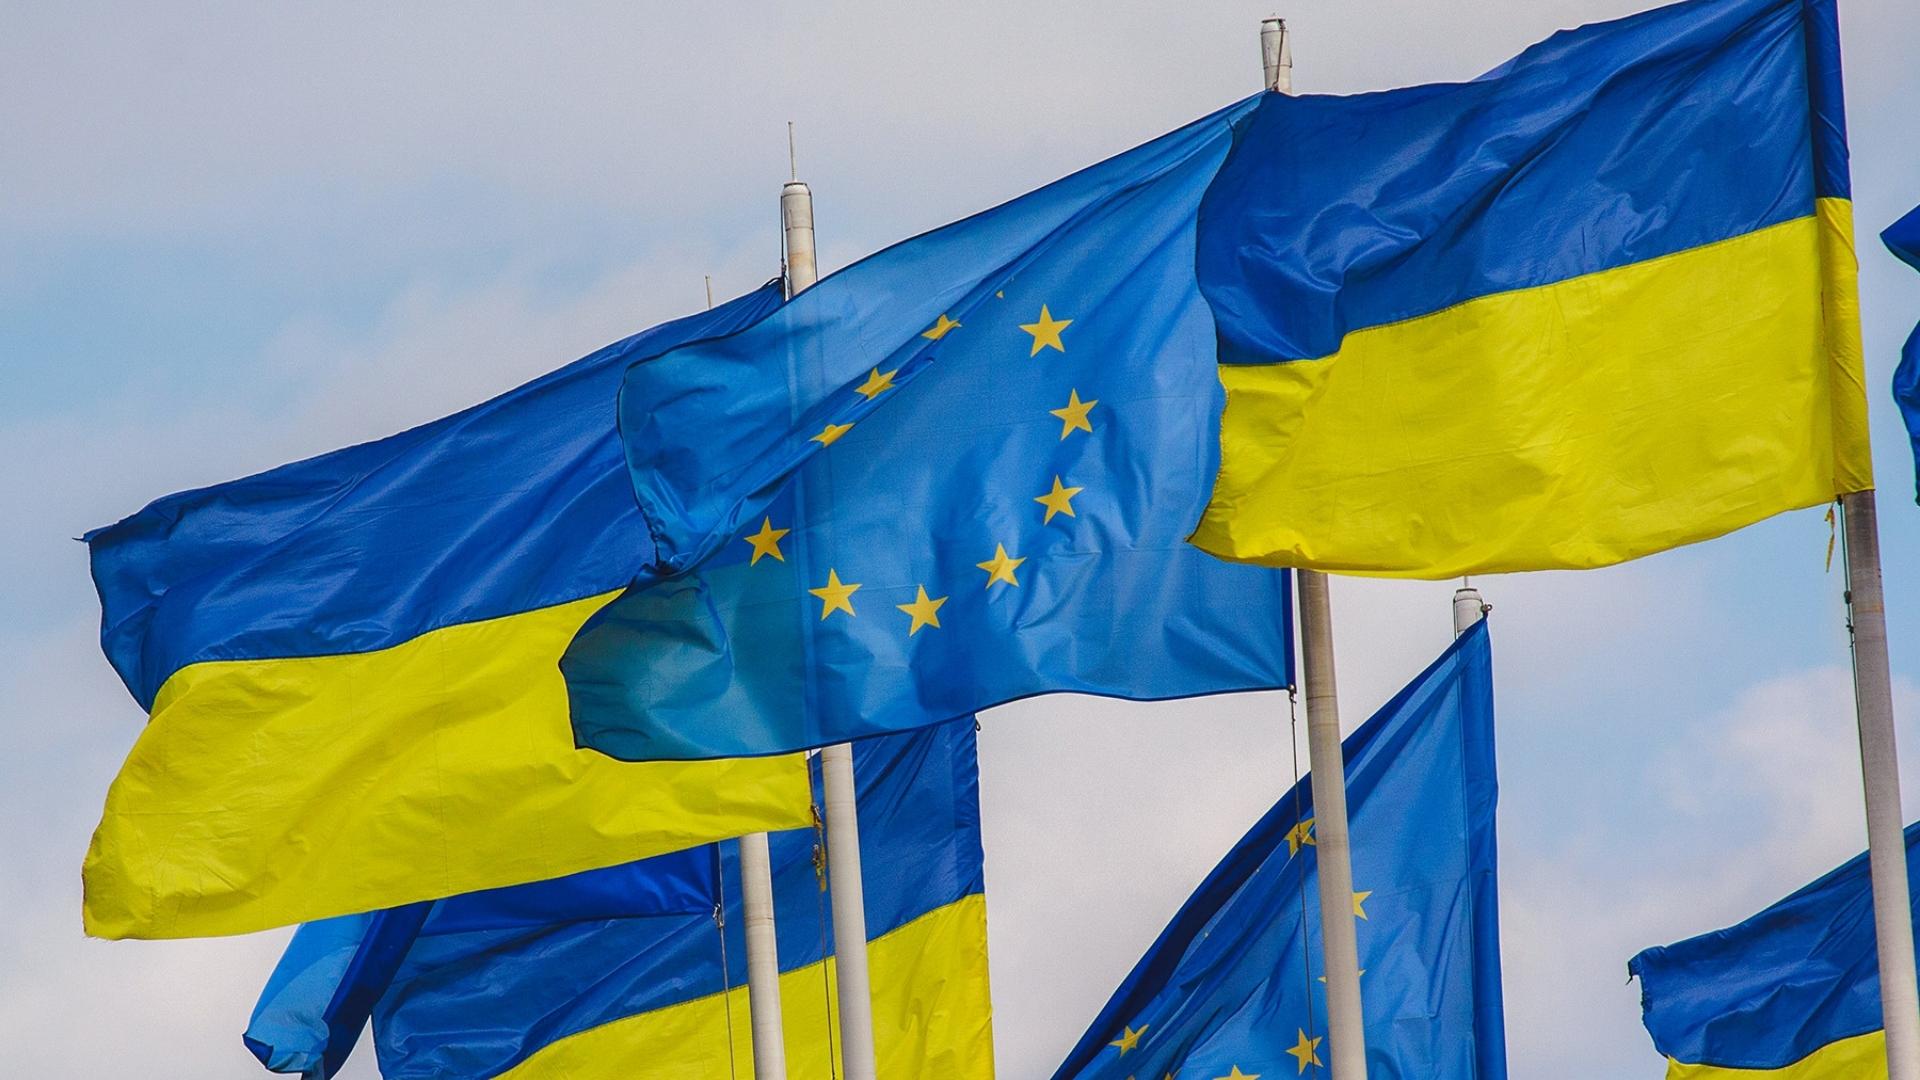 Banderas de Ucrania y la Unión Europea. Foto: Pixabay